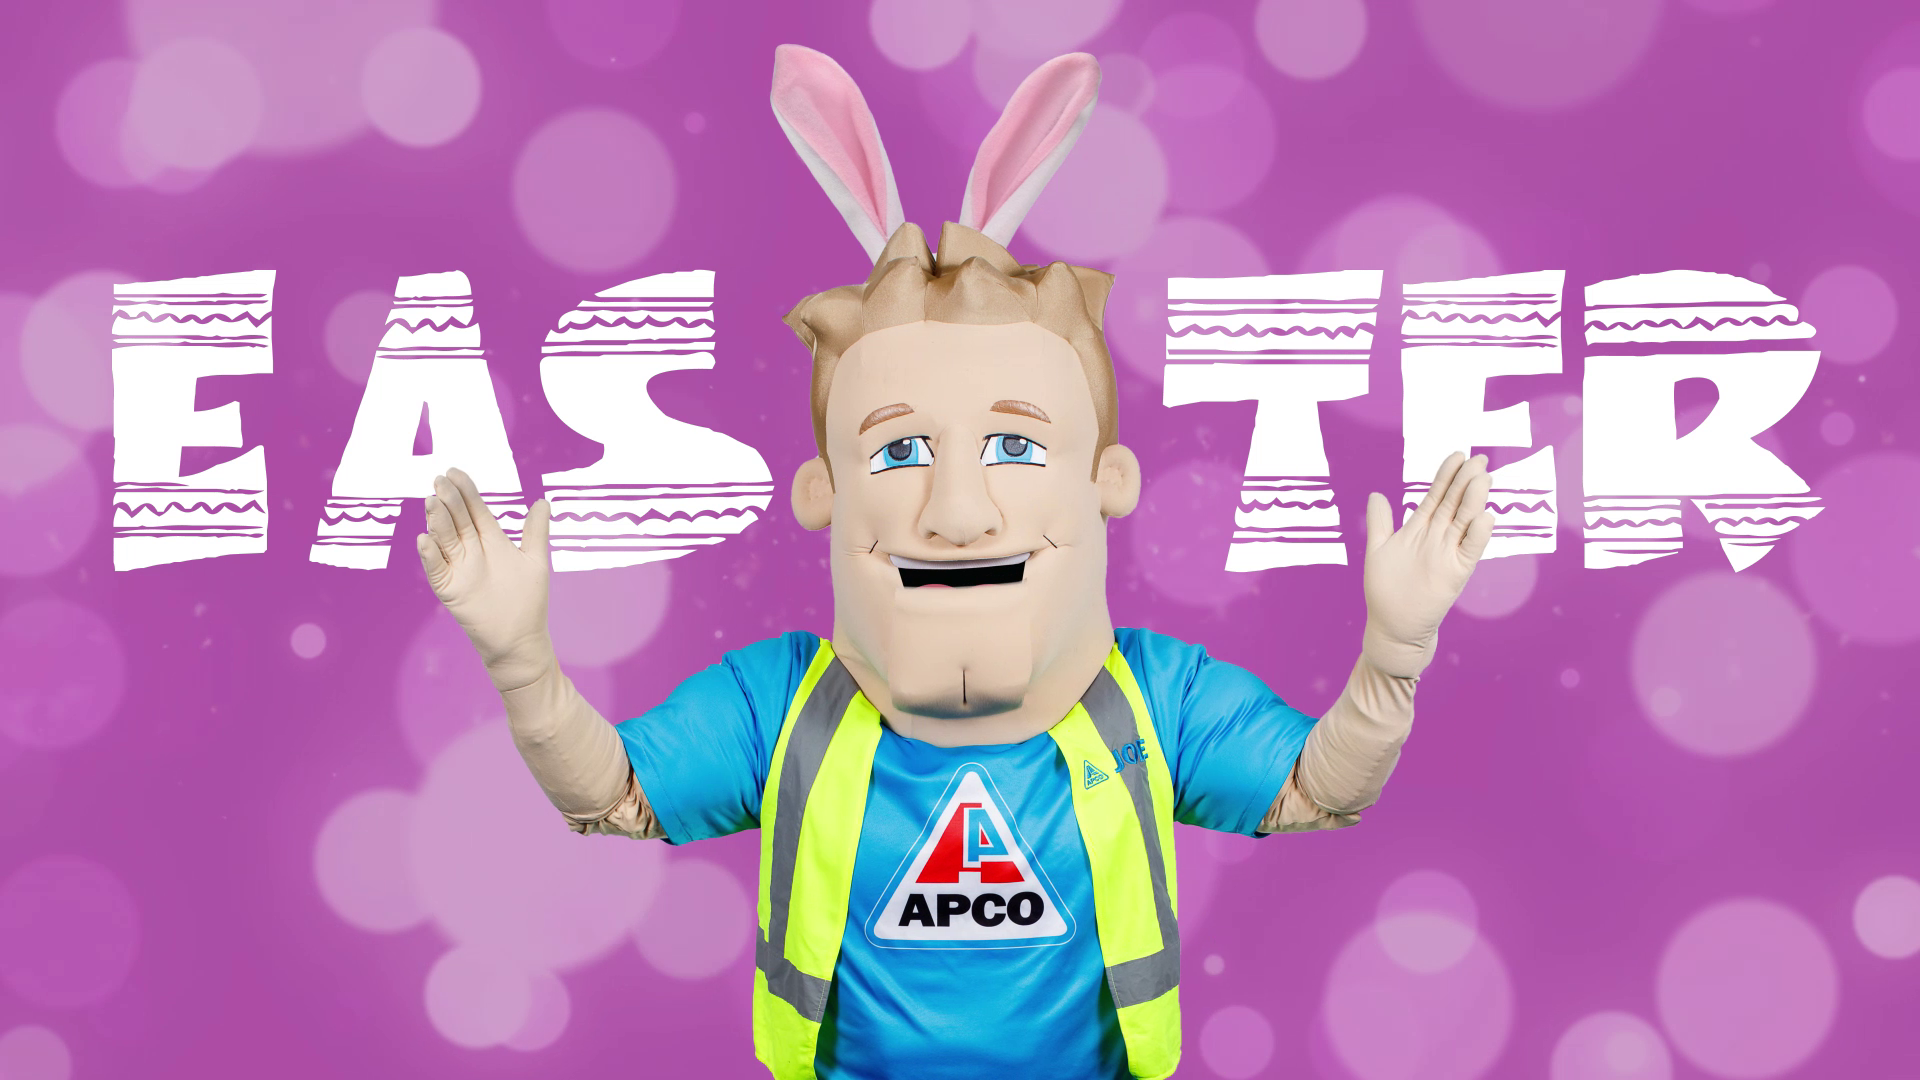 APCO Easter - Campaign